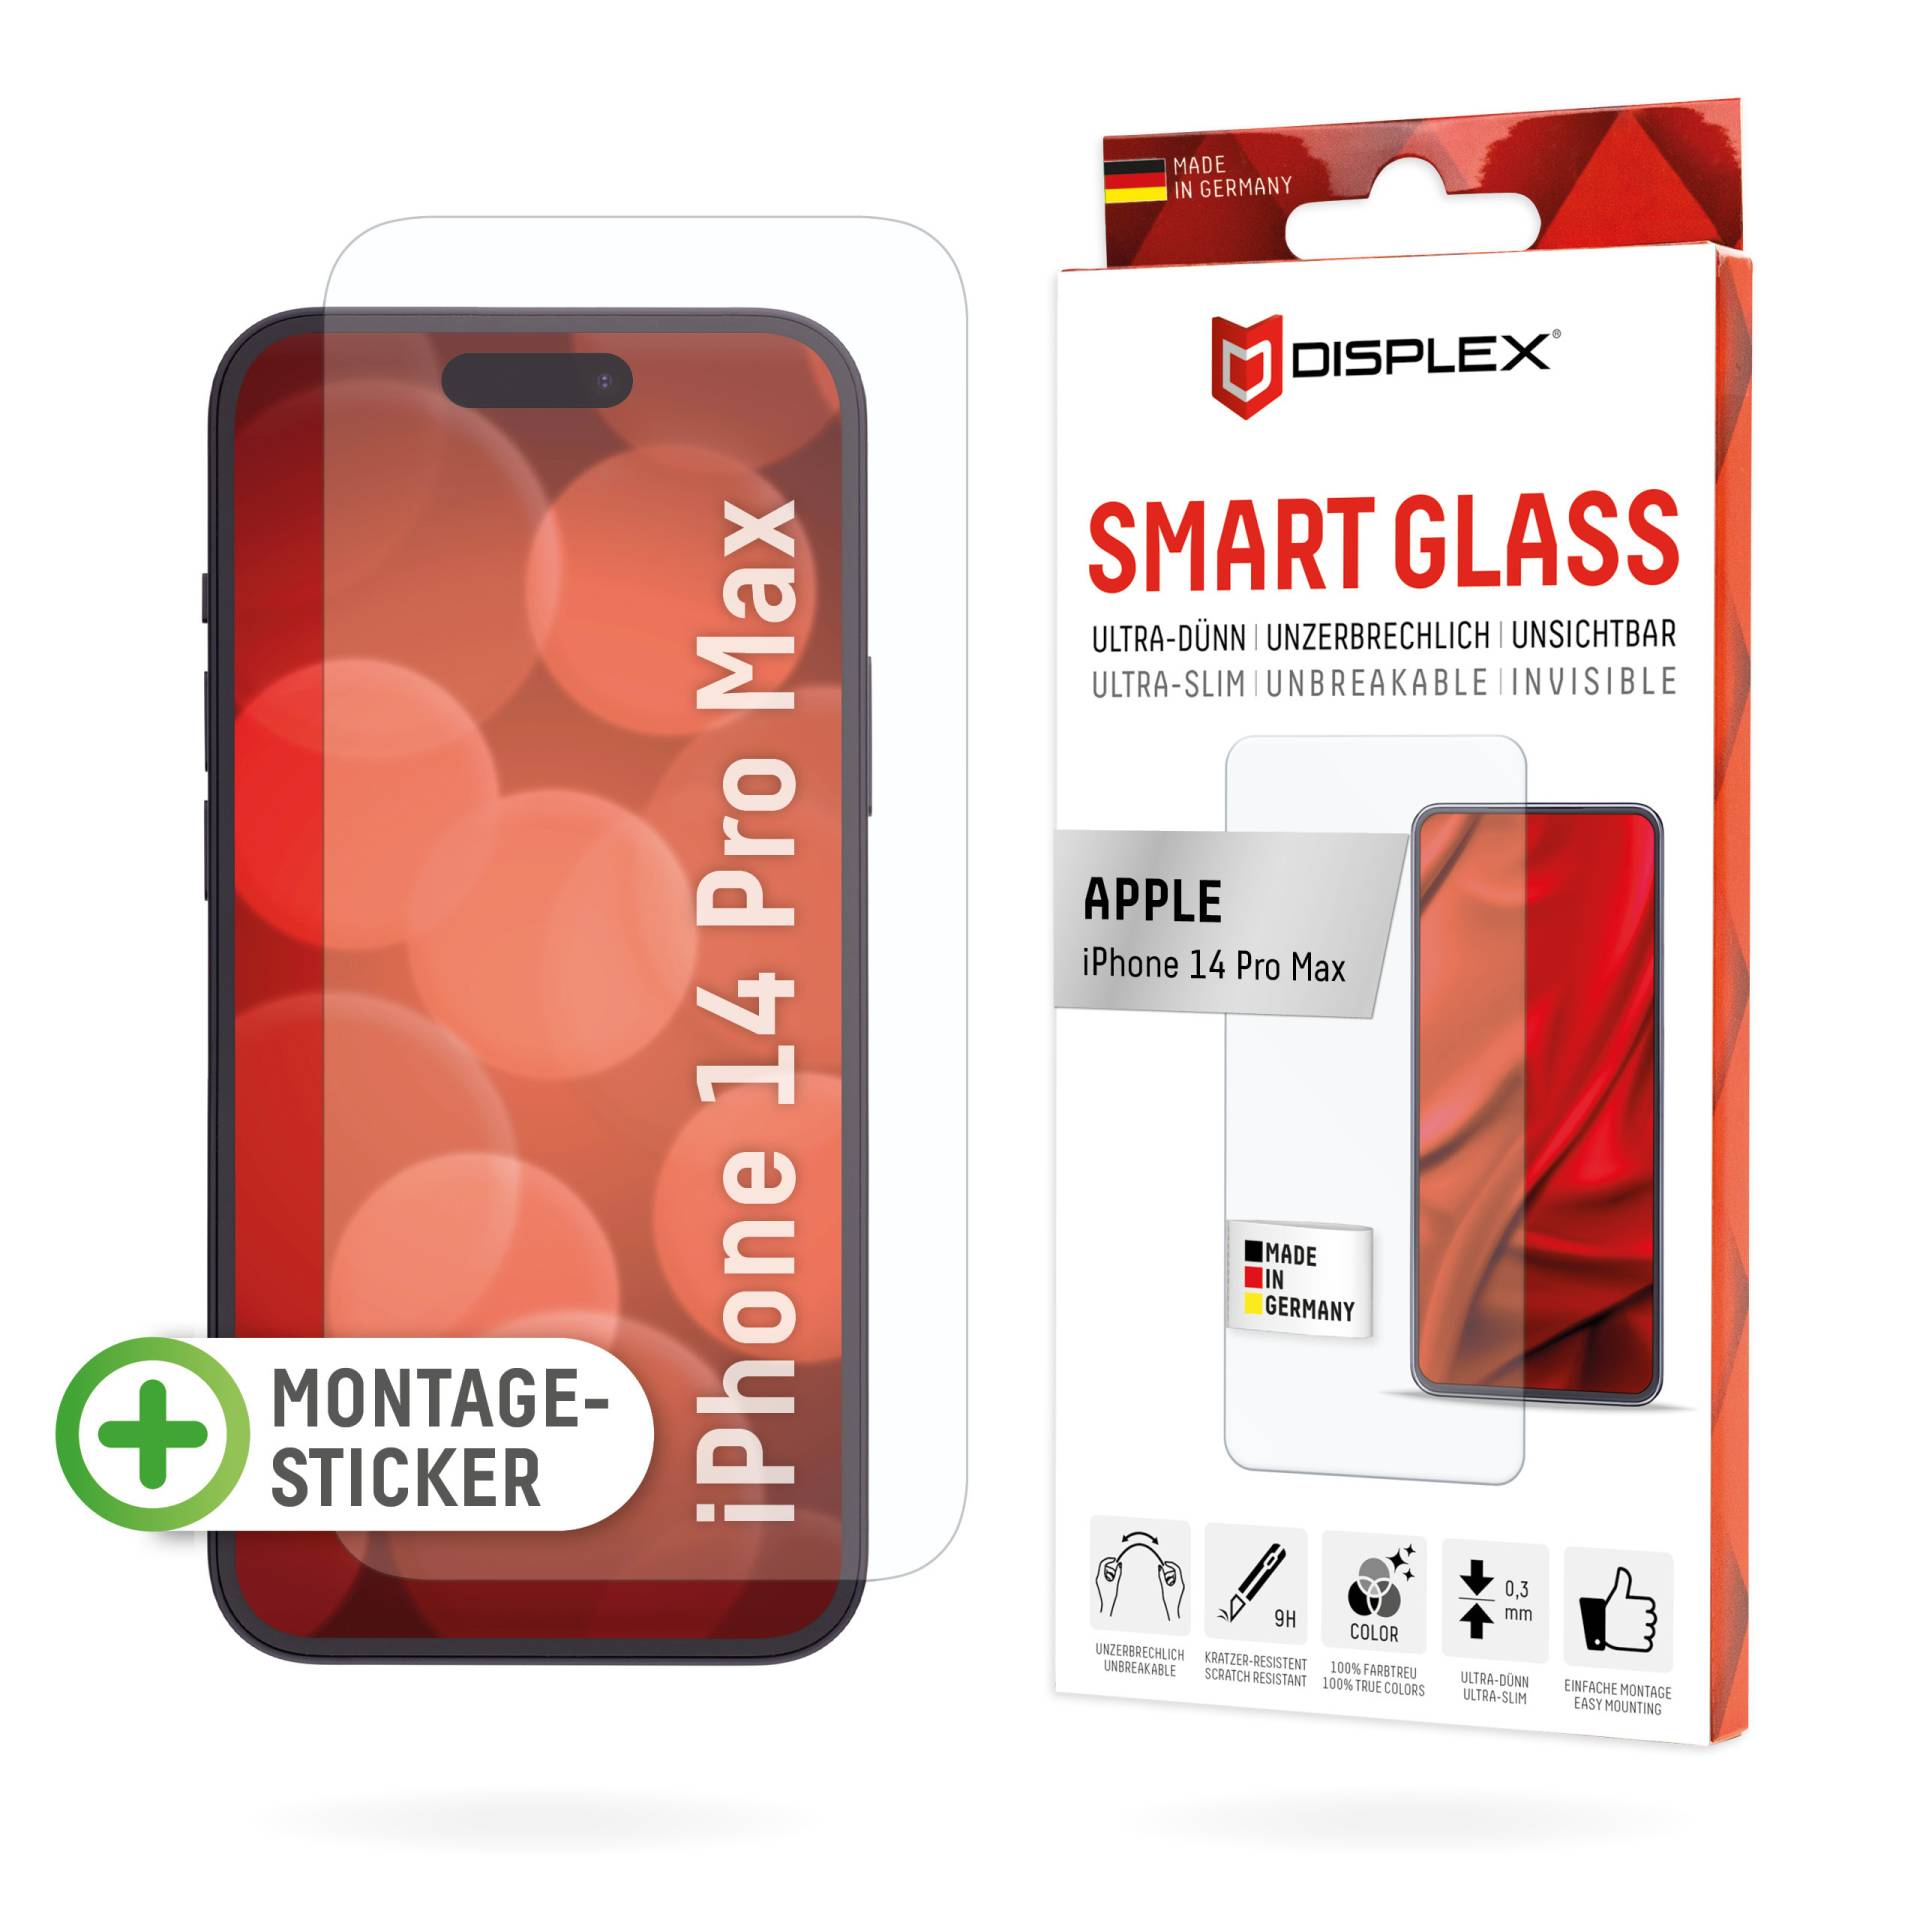 DISPLEX Smart Glass (9H) für Apple iPhone 14 Pro Max, Montagesticker, unzerbrechlich, ultra-dünn, unsichtbar von Displex